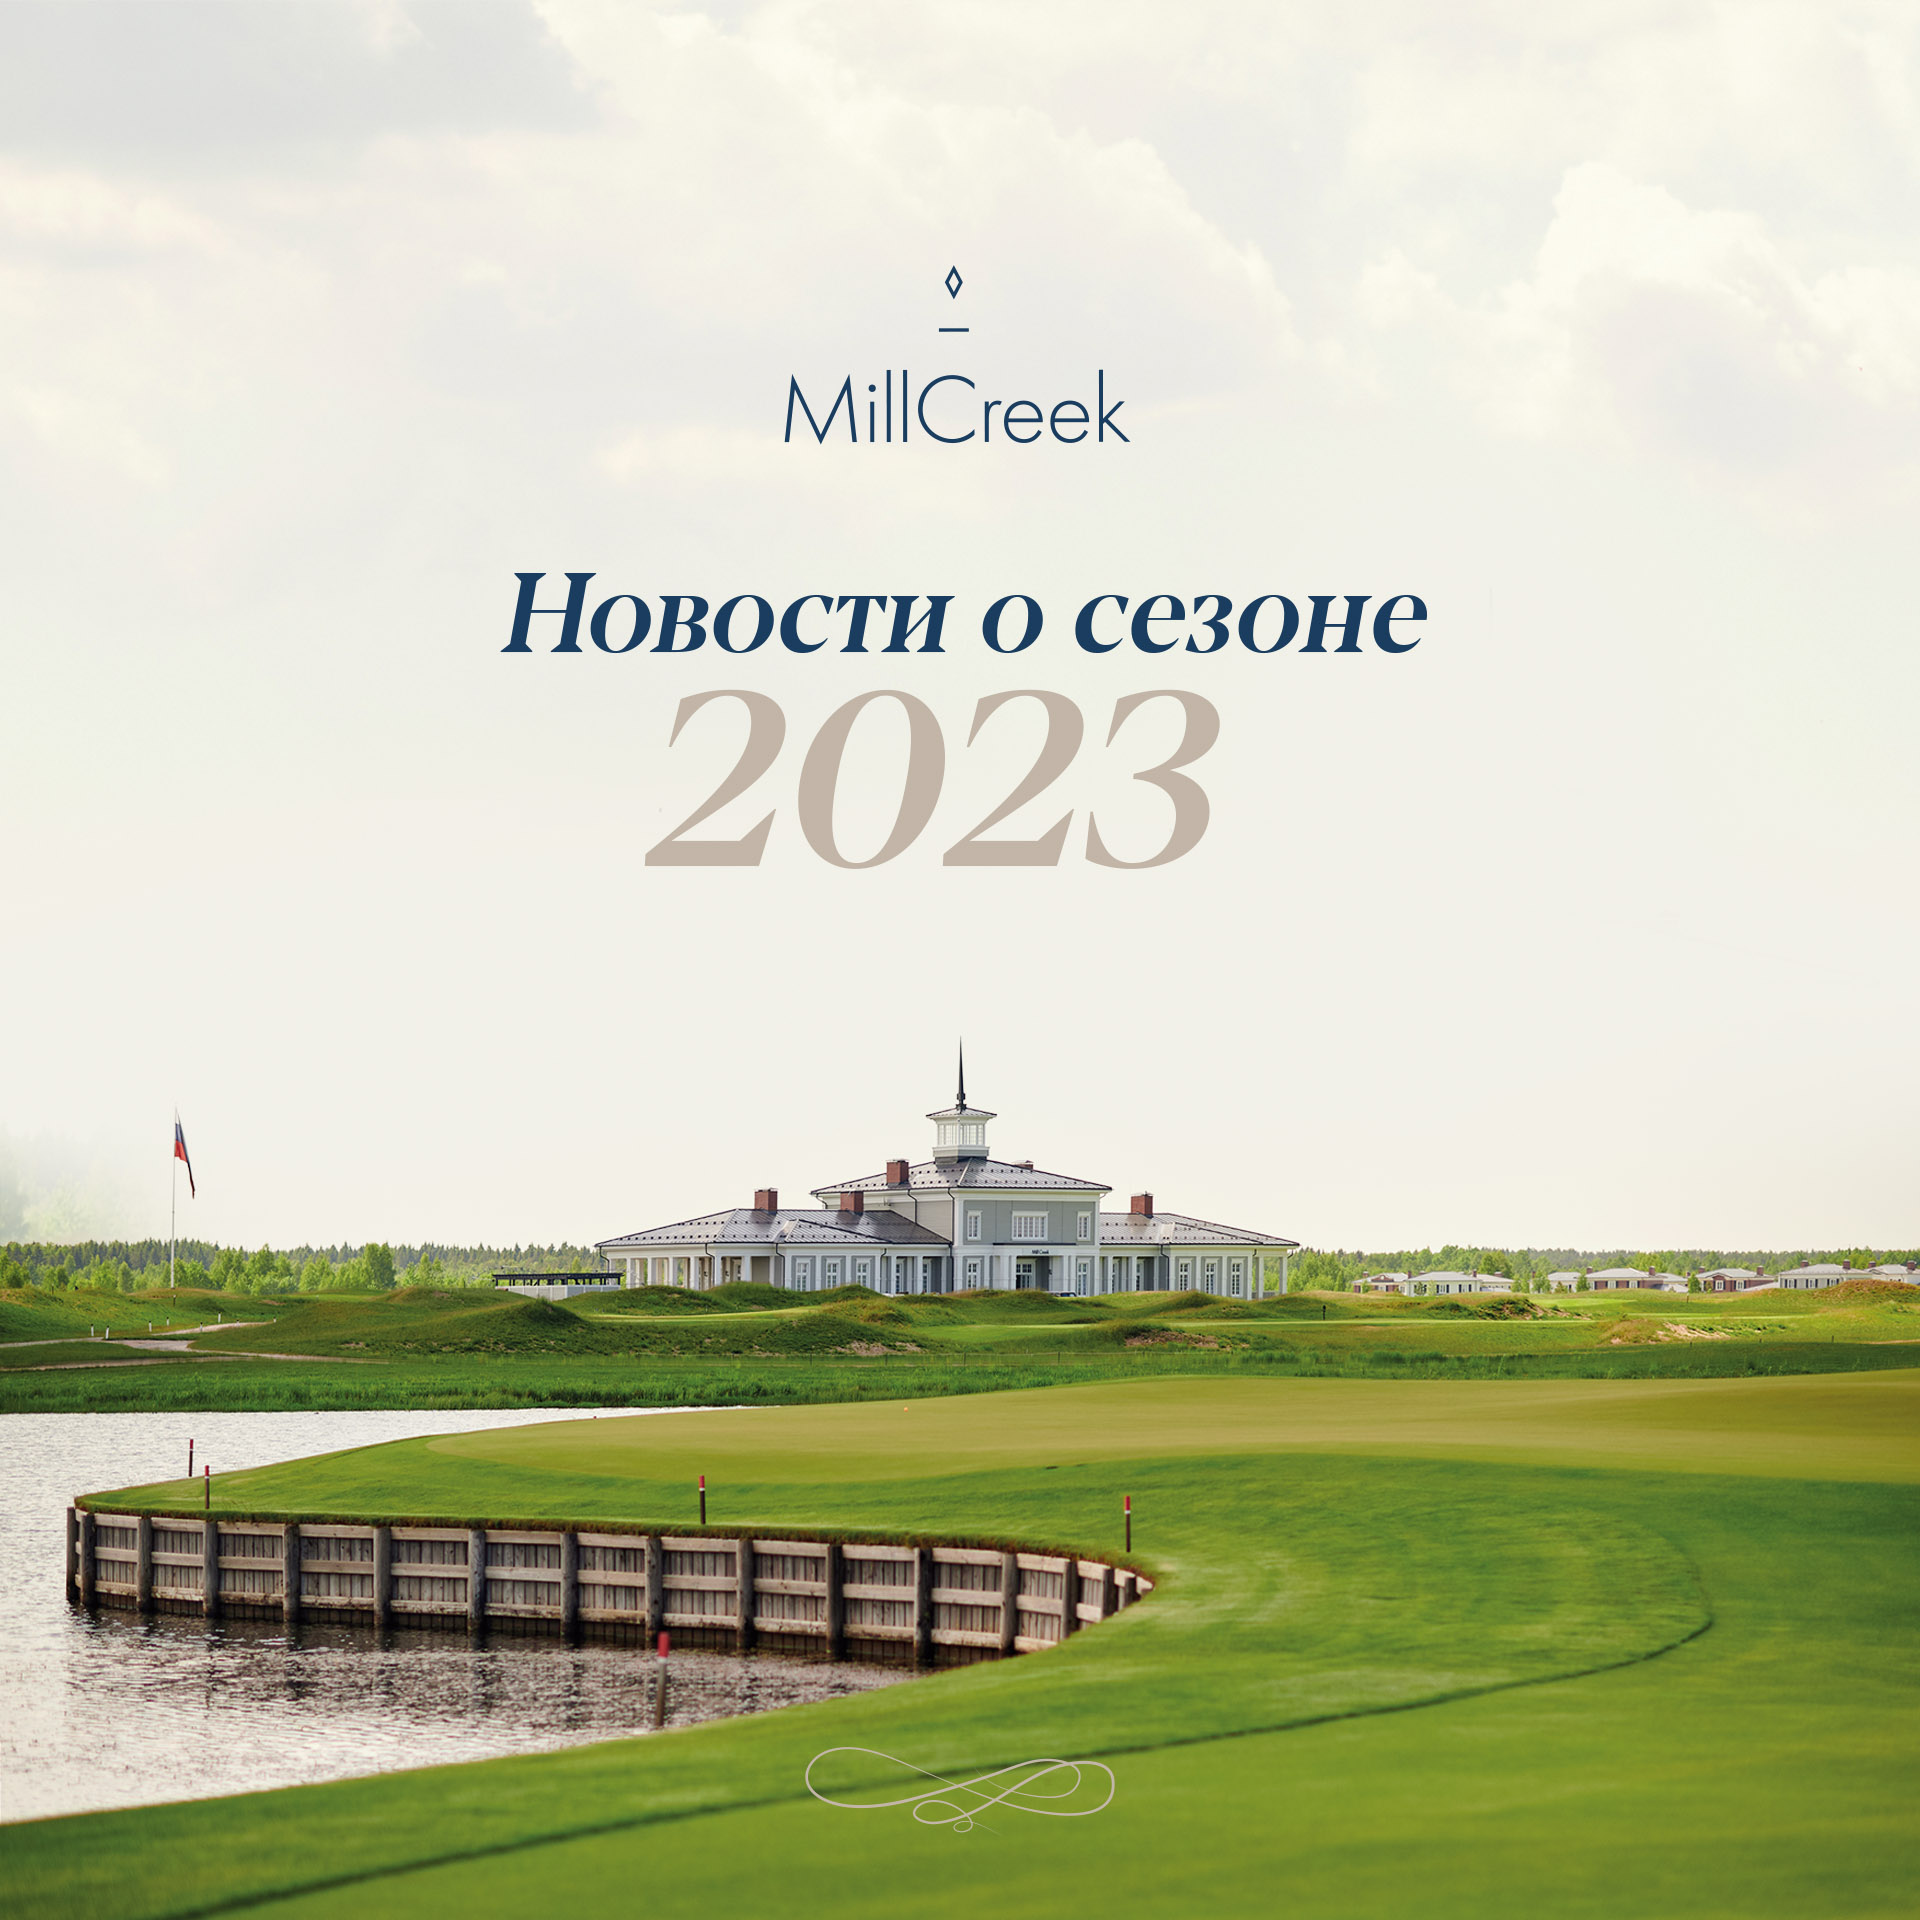 Гольф-клуб MillCreek рад сообщить о планах на 2023 год!